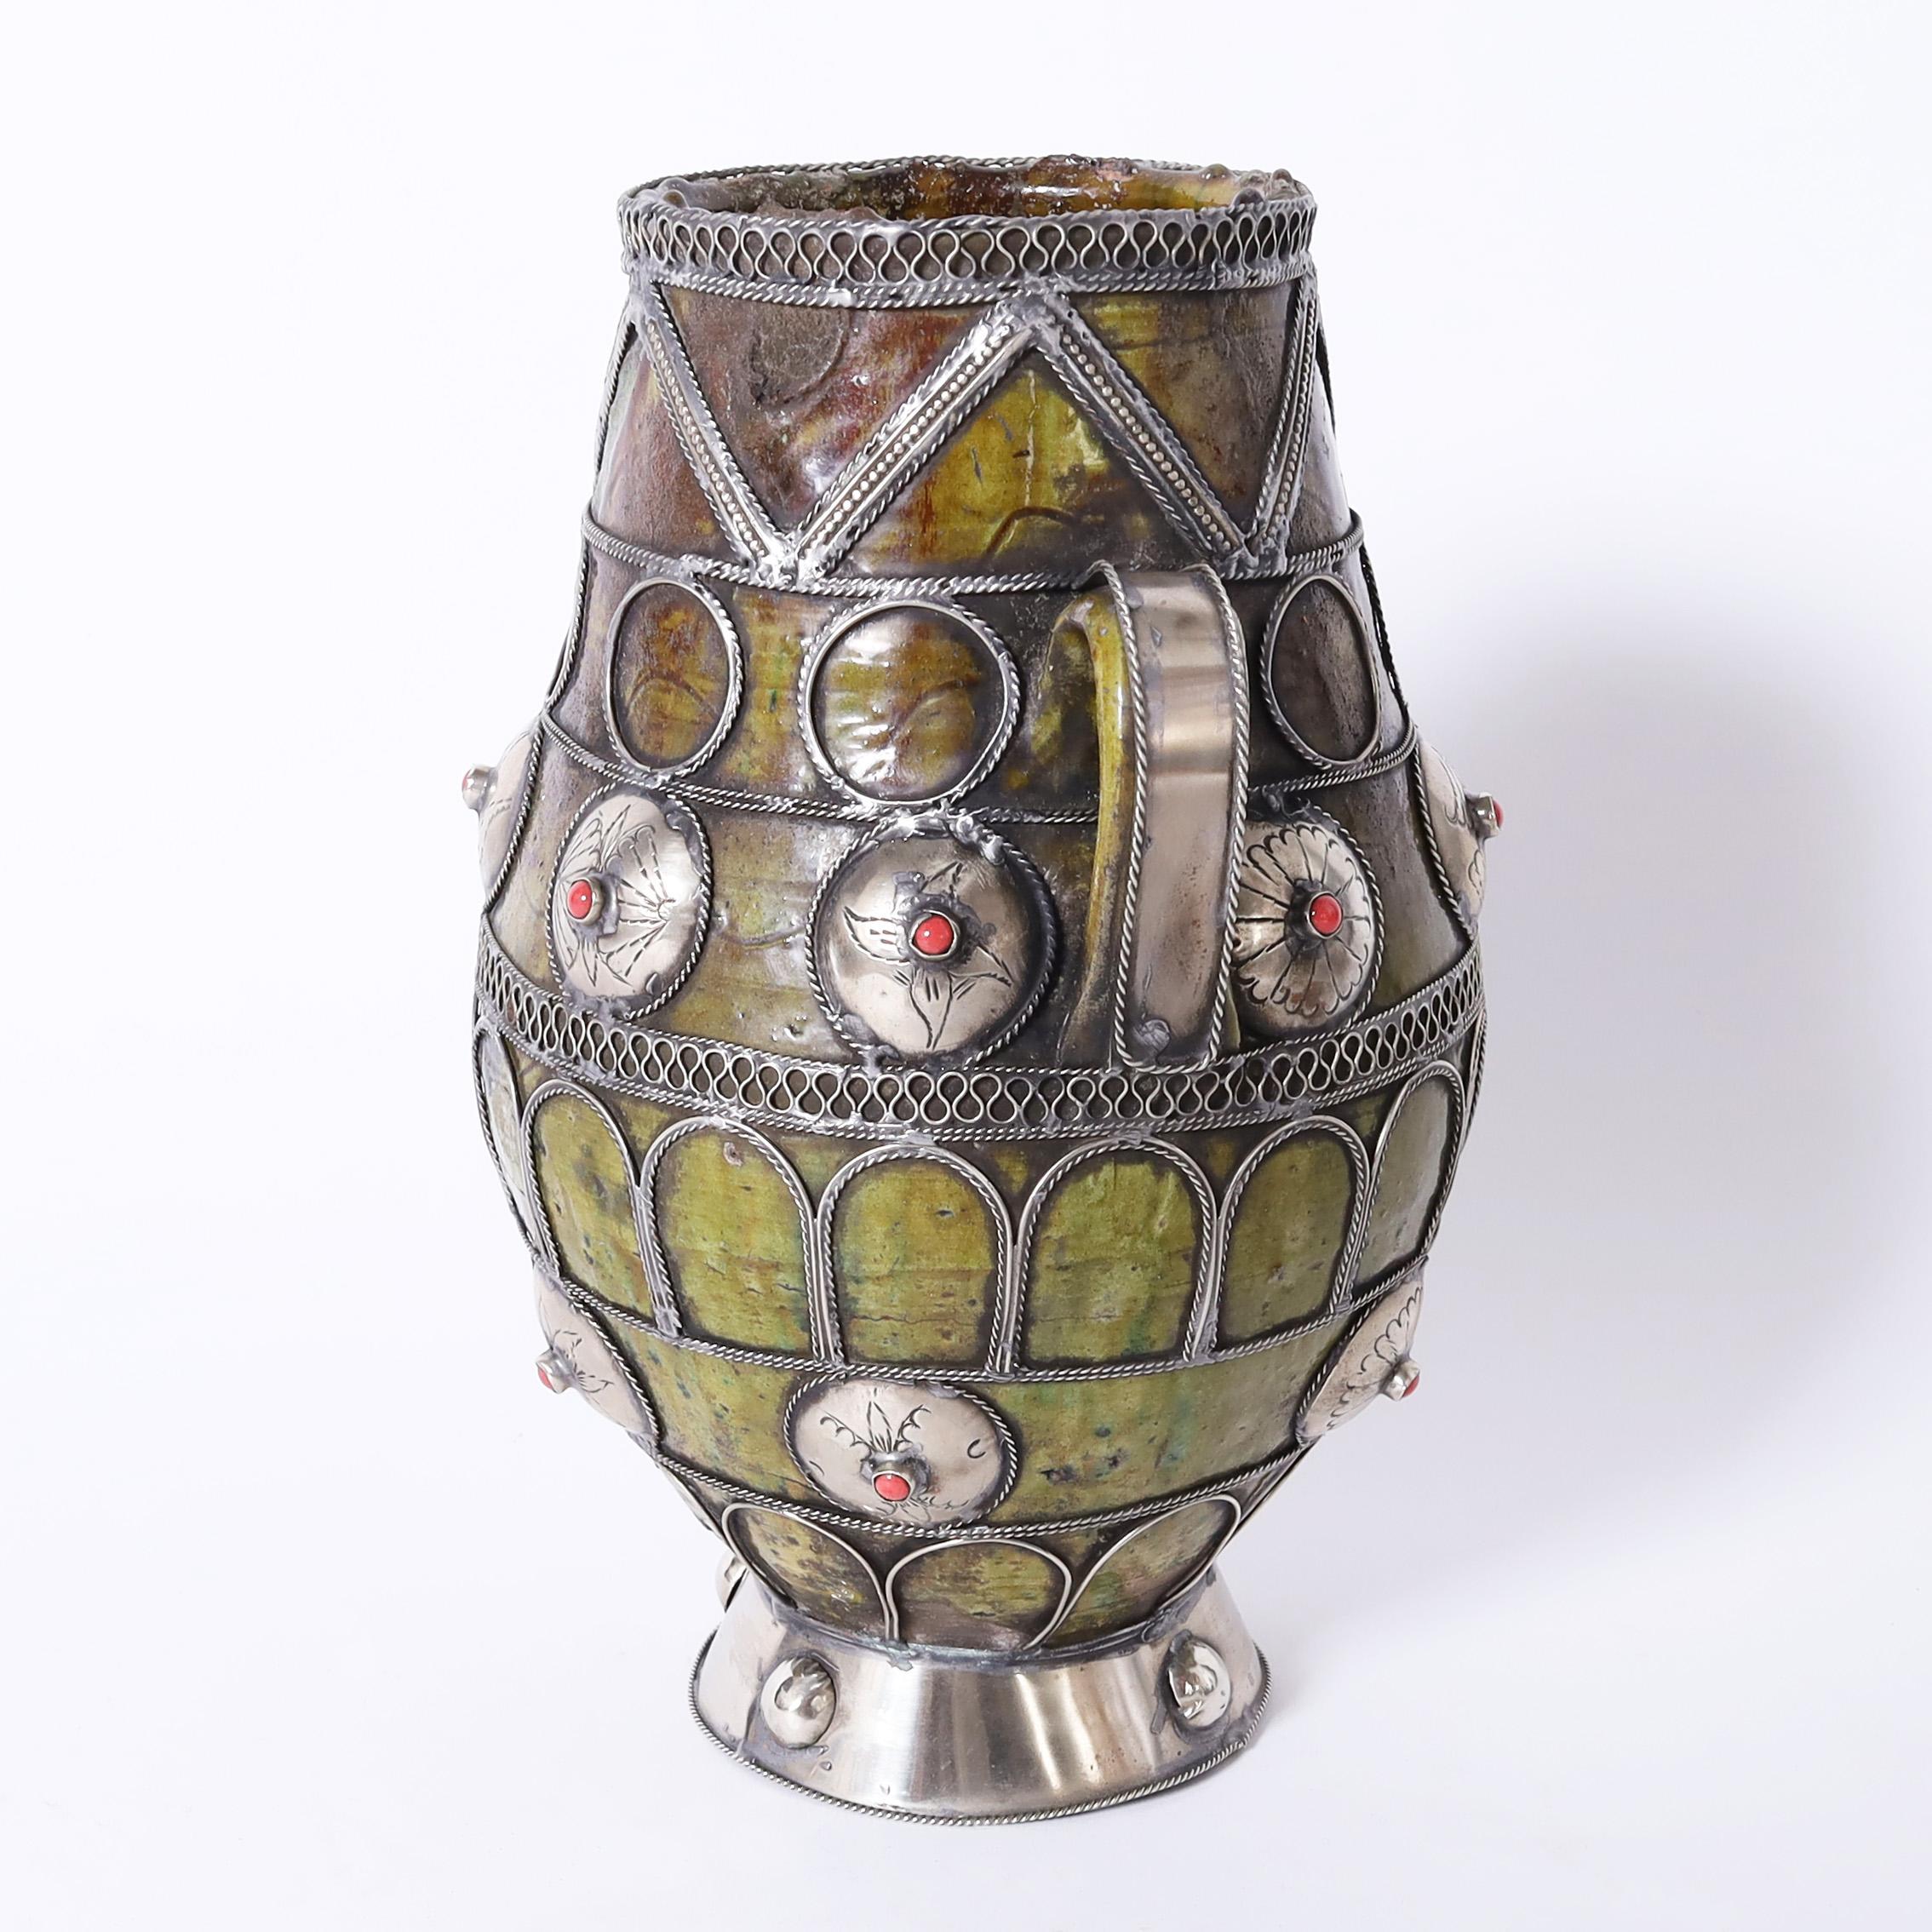 Remarquable vase marocain vintage fabriqué à la main en terre cuite de forme classique avec une glaçure de couleur olive et décoré d'un travail de métal semblable à celui d'un bijou.